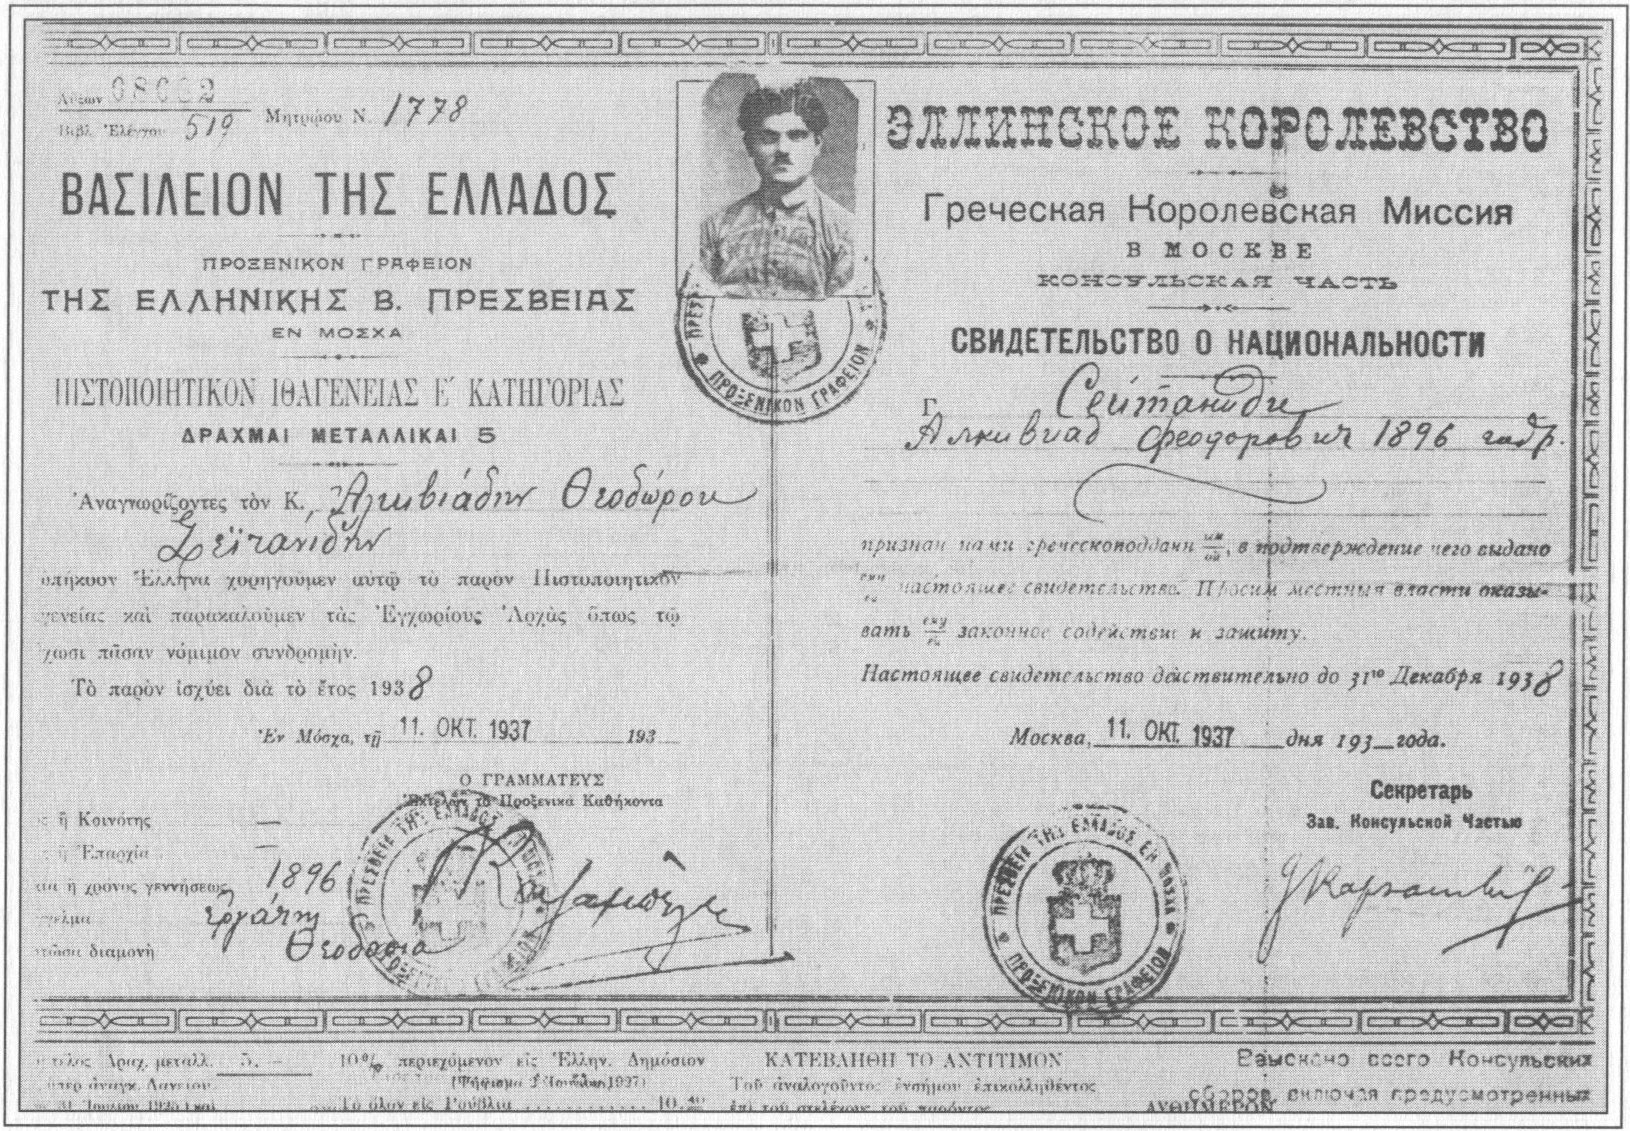 Греческий паспорт А.Ф. Сейтаниди. Воспроизводится впервые